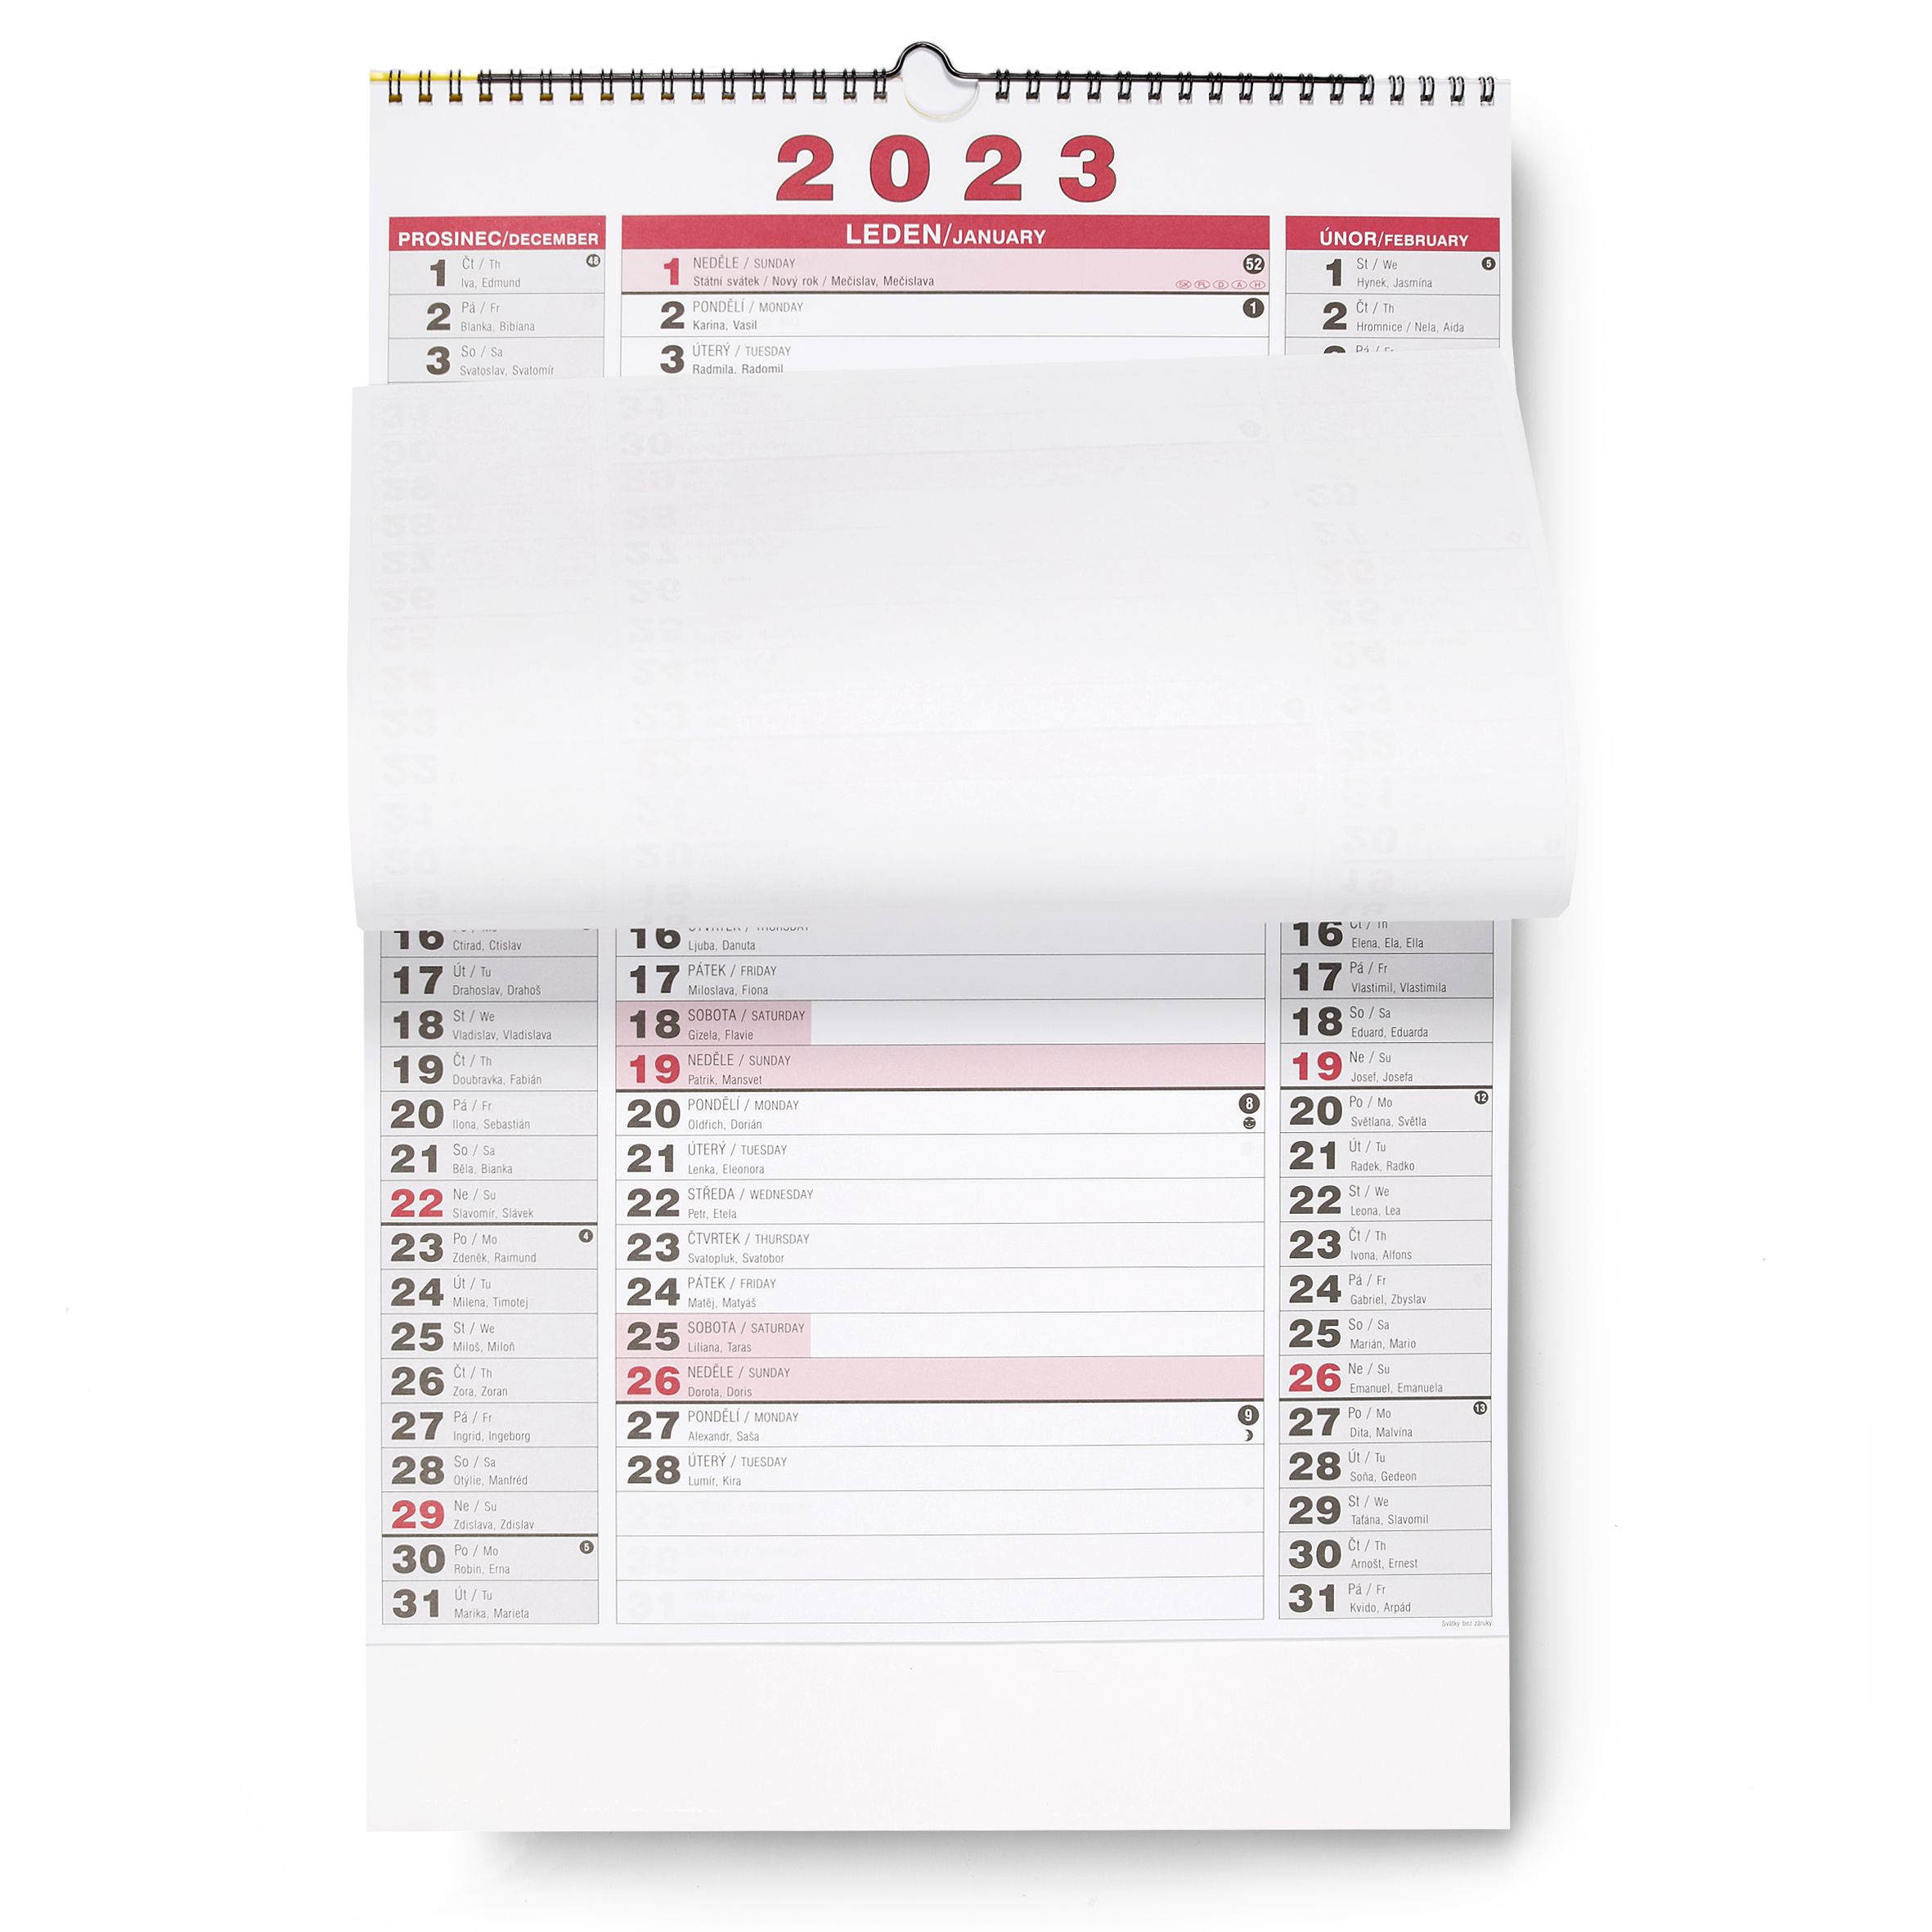 BOBO Nástěnný kalendář tříměsíční NEW 2023